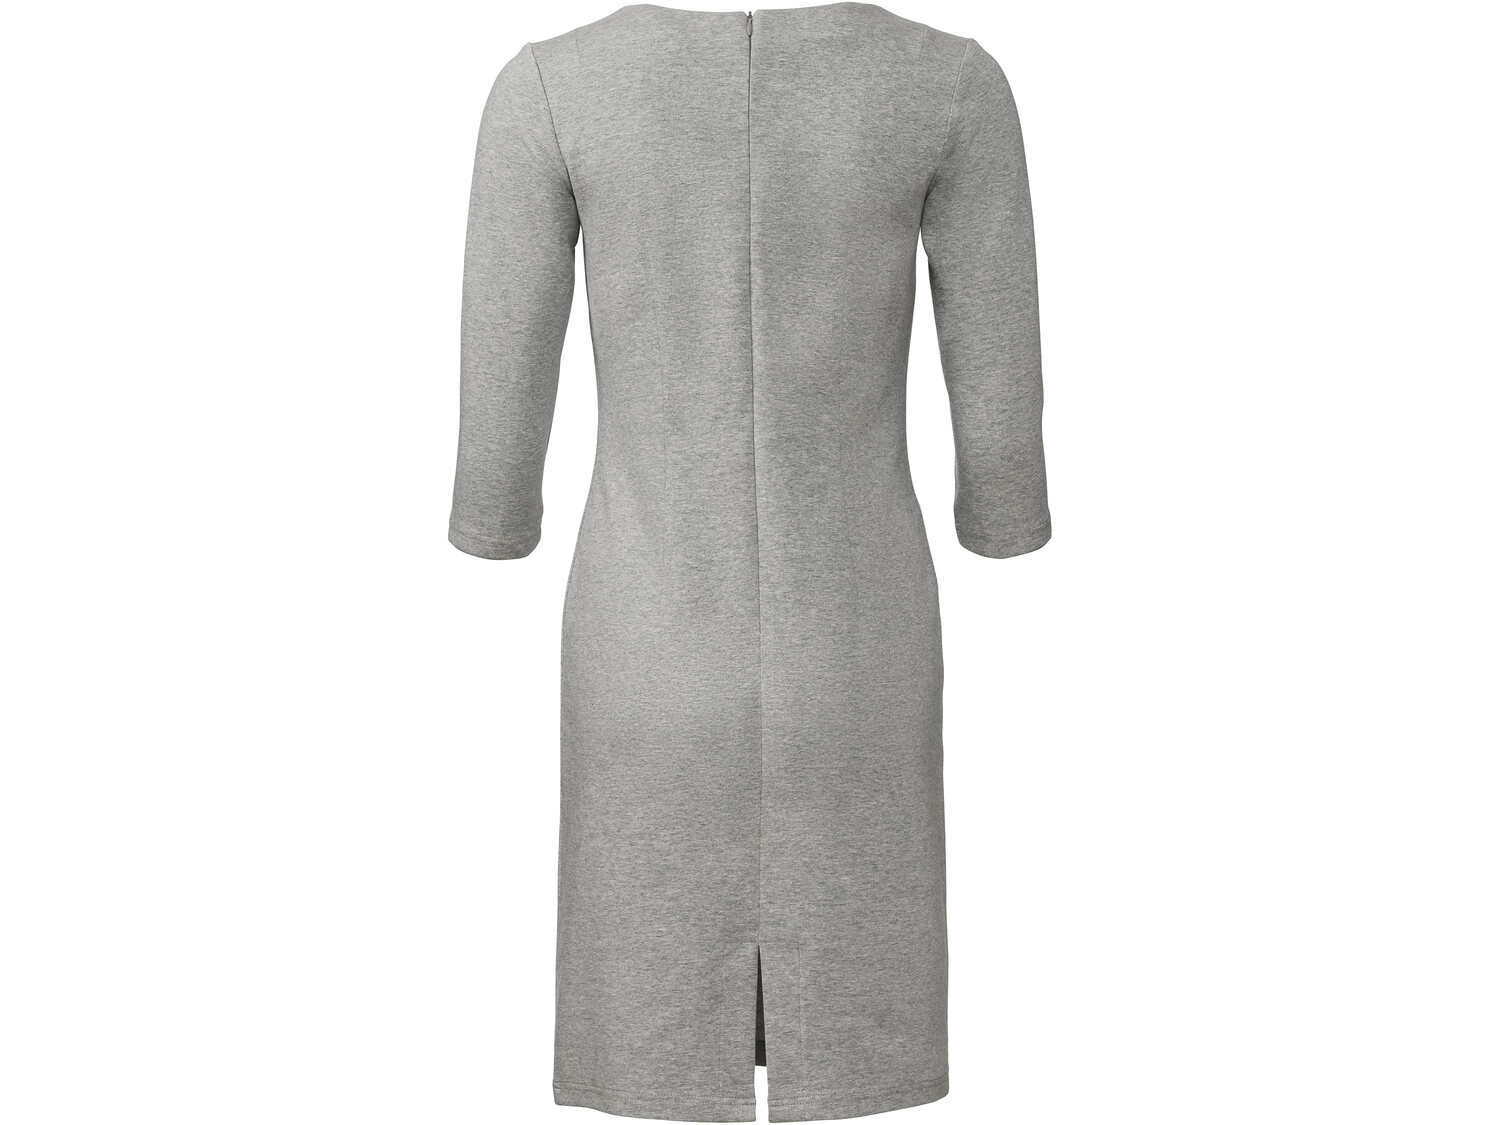 Sukienka z bawełną Esmara, cena 39,99 PLN 
- rozmiary: 34-44
Dostępne rozmiary

Opis

- ...